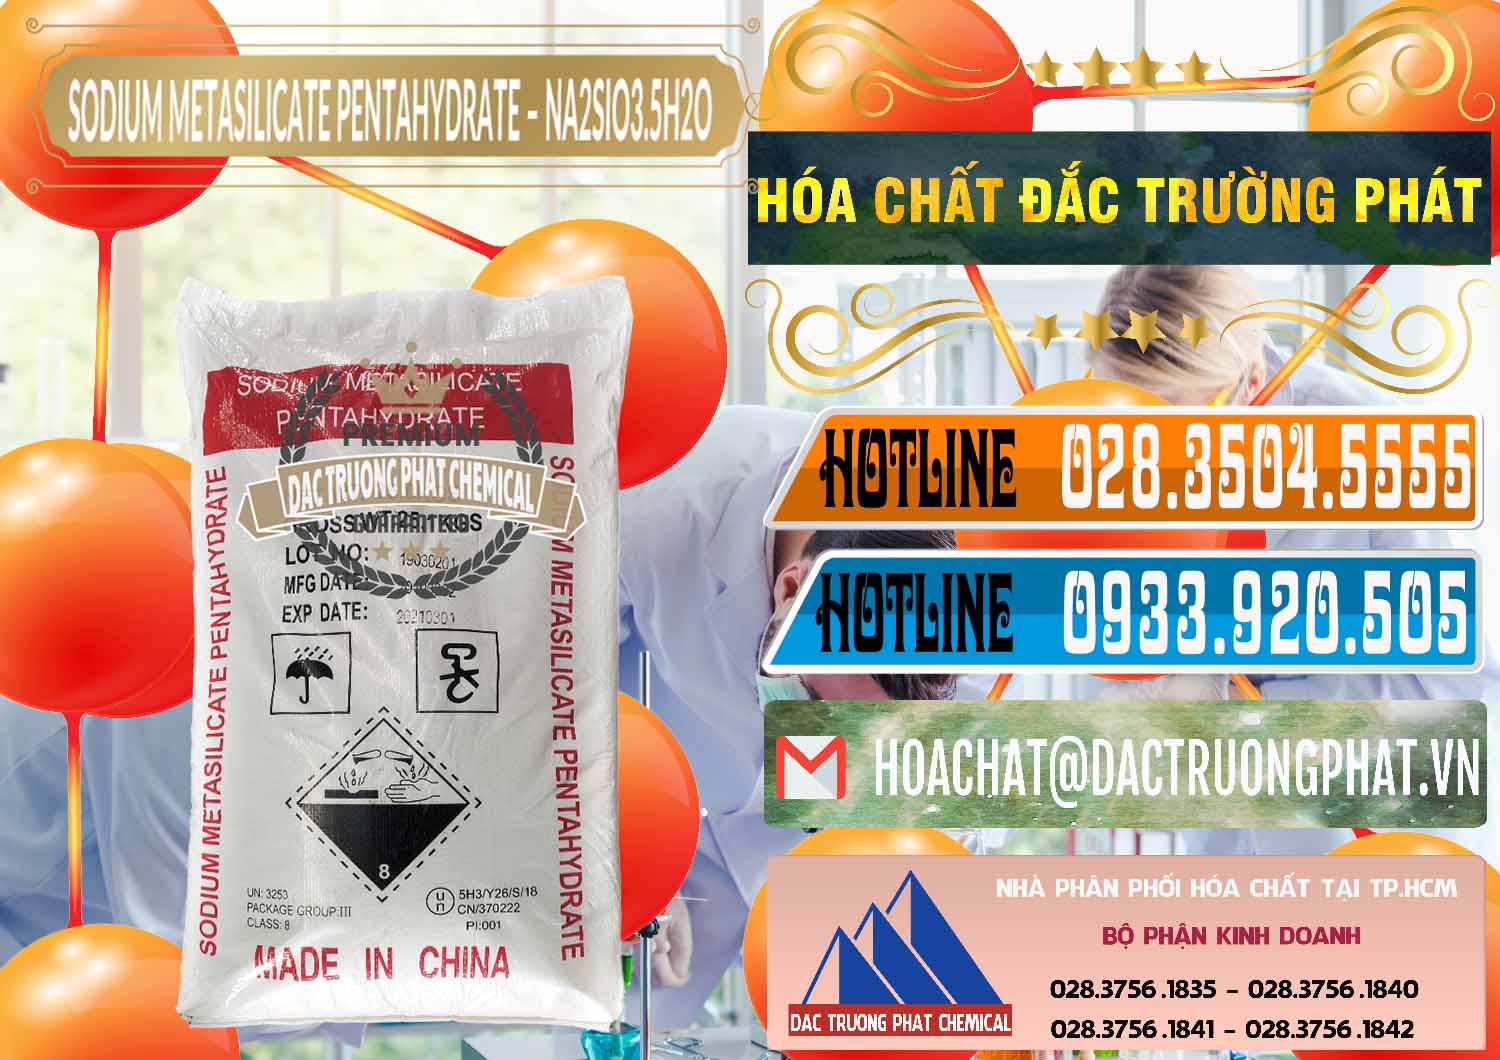 Cty chuyên cung cấp - bán Sodium Metasilicate Pentahydrate – Silicate Bột Trung Quốc China - 0147 - Cty chuyên kinh doanh ( phân phối ) hóa chất tại TP.HCM - stmp.net